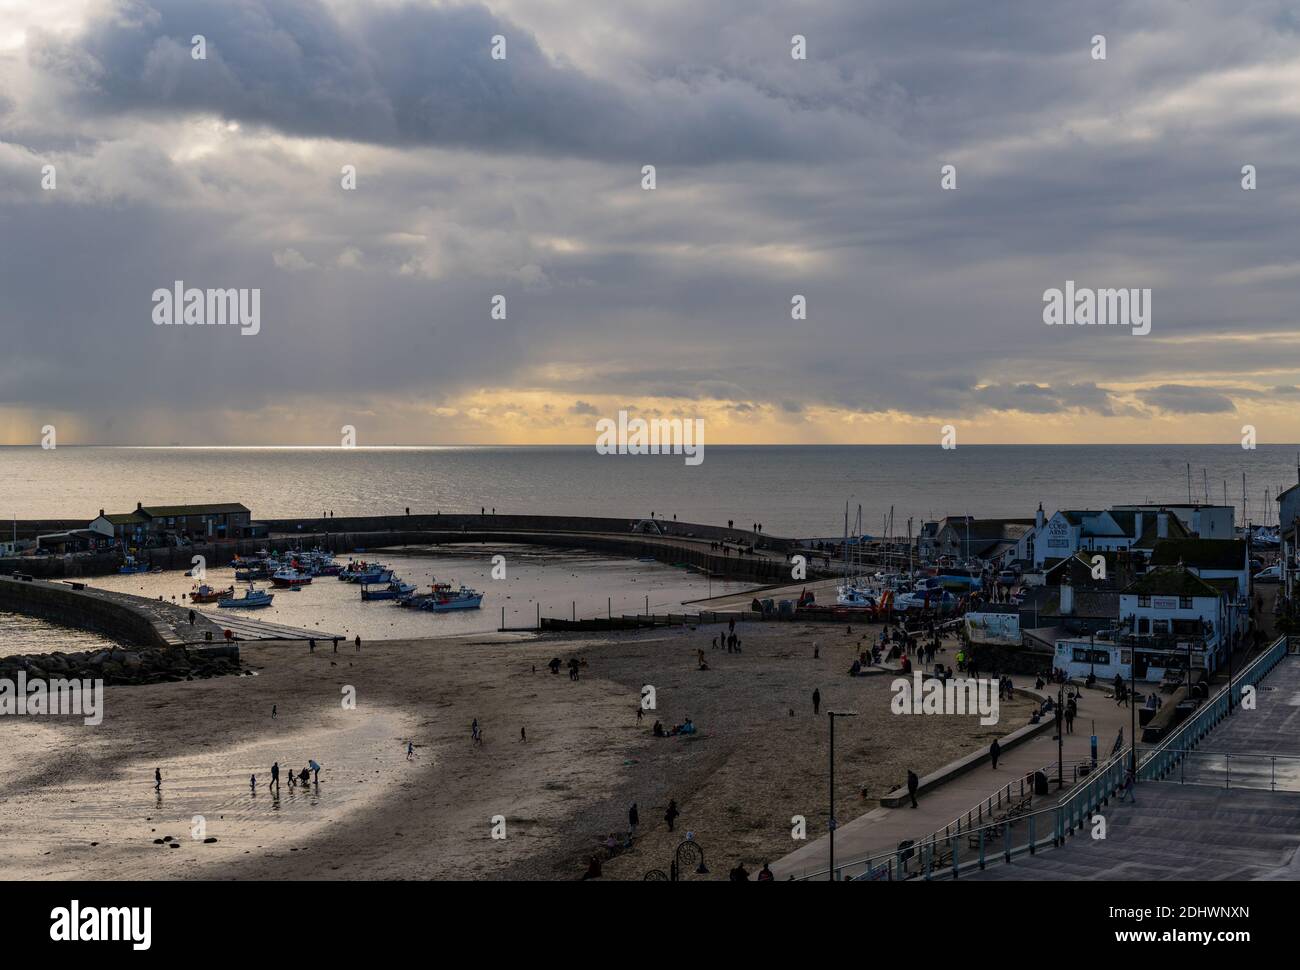 Lyme Regis, Dorset, Großbritannien. Dezember 2020. UK Wetter: Eine Wetterfront bewegt sich nach einem hellen, sonnigen Morgen in der Küstenortstadt Lyme Regis. Kredit: Celia McMahon/Alamy Live Nachrichten Stockfoto